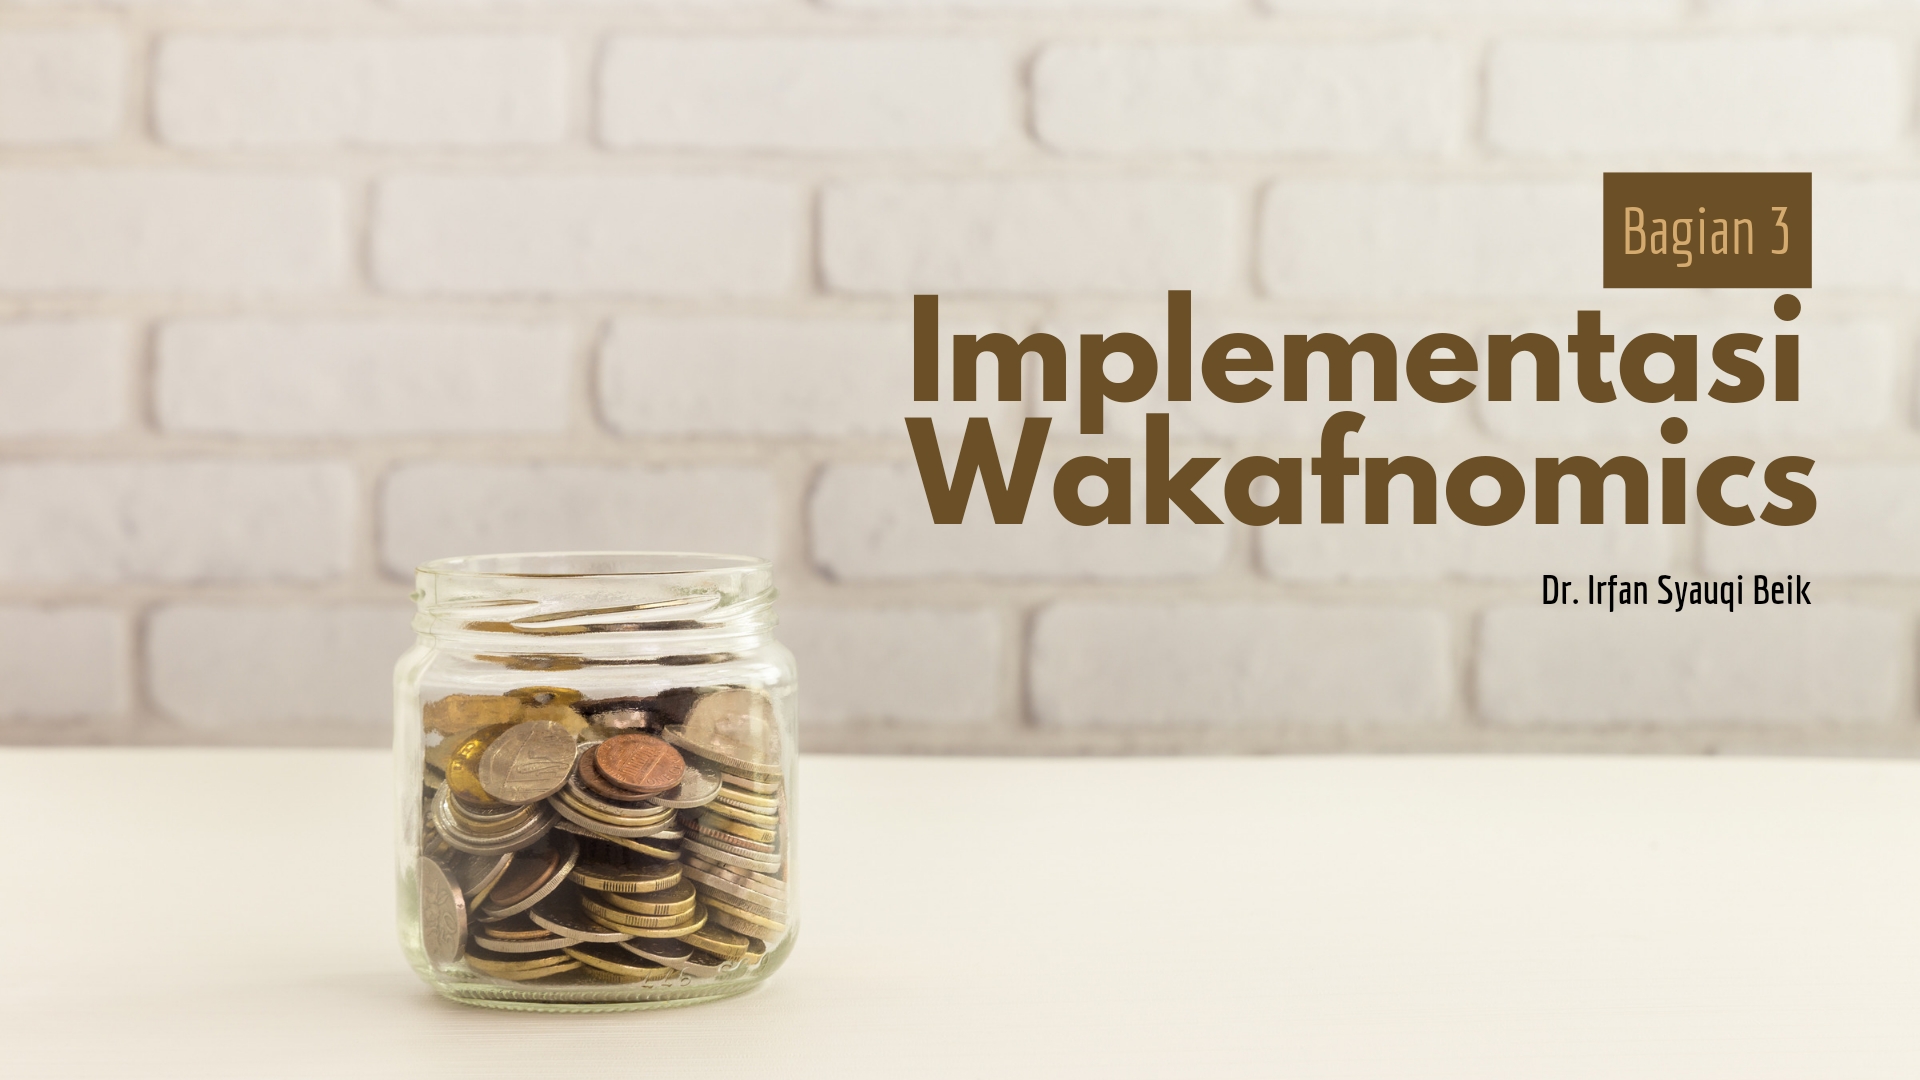 Implementasi Wakafnomics (Bagian 3)  - 20220729 104005 0000 - Implementasi Wakafnomics (Bagian 3)